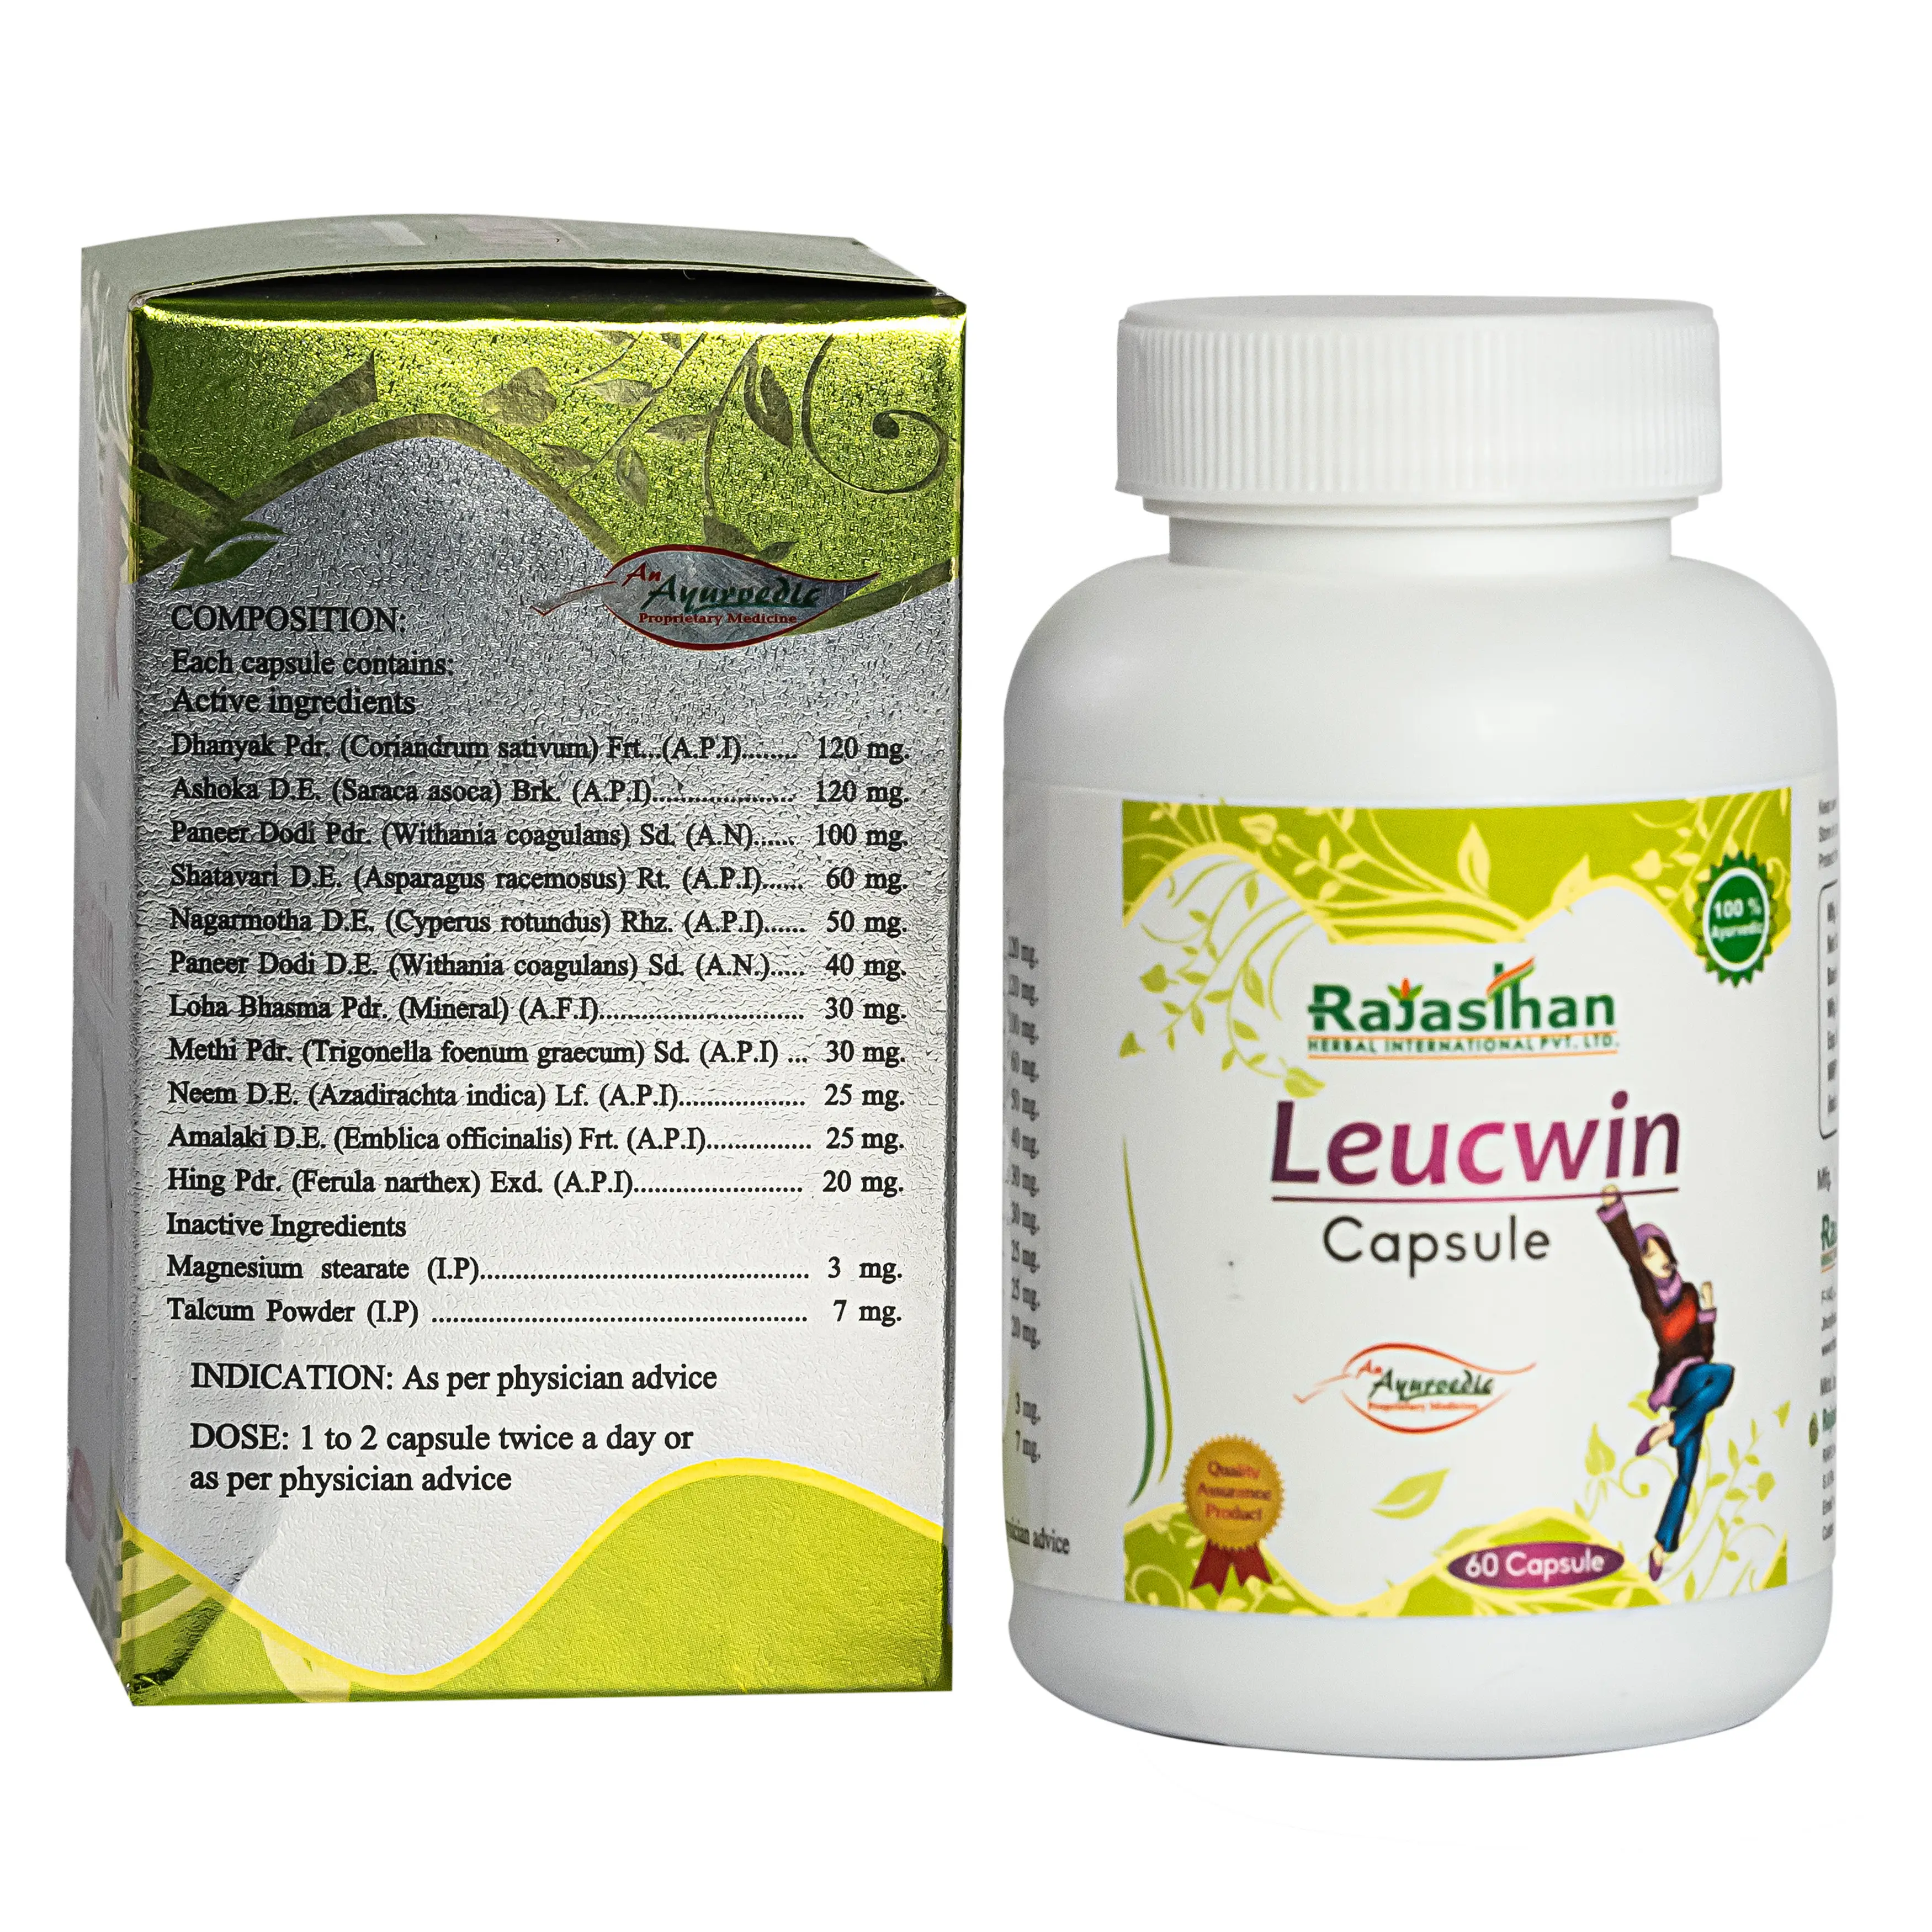 Leucwin Capsule 60 Ingredients Rajasthan Aushdhalaya